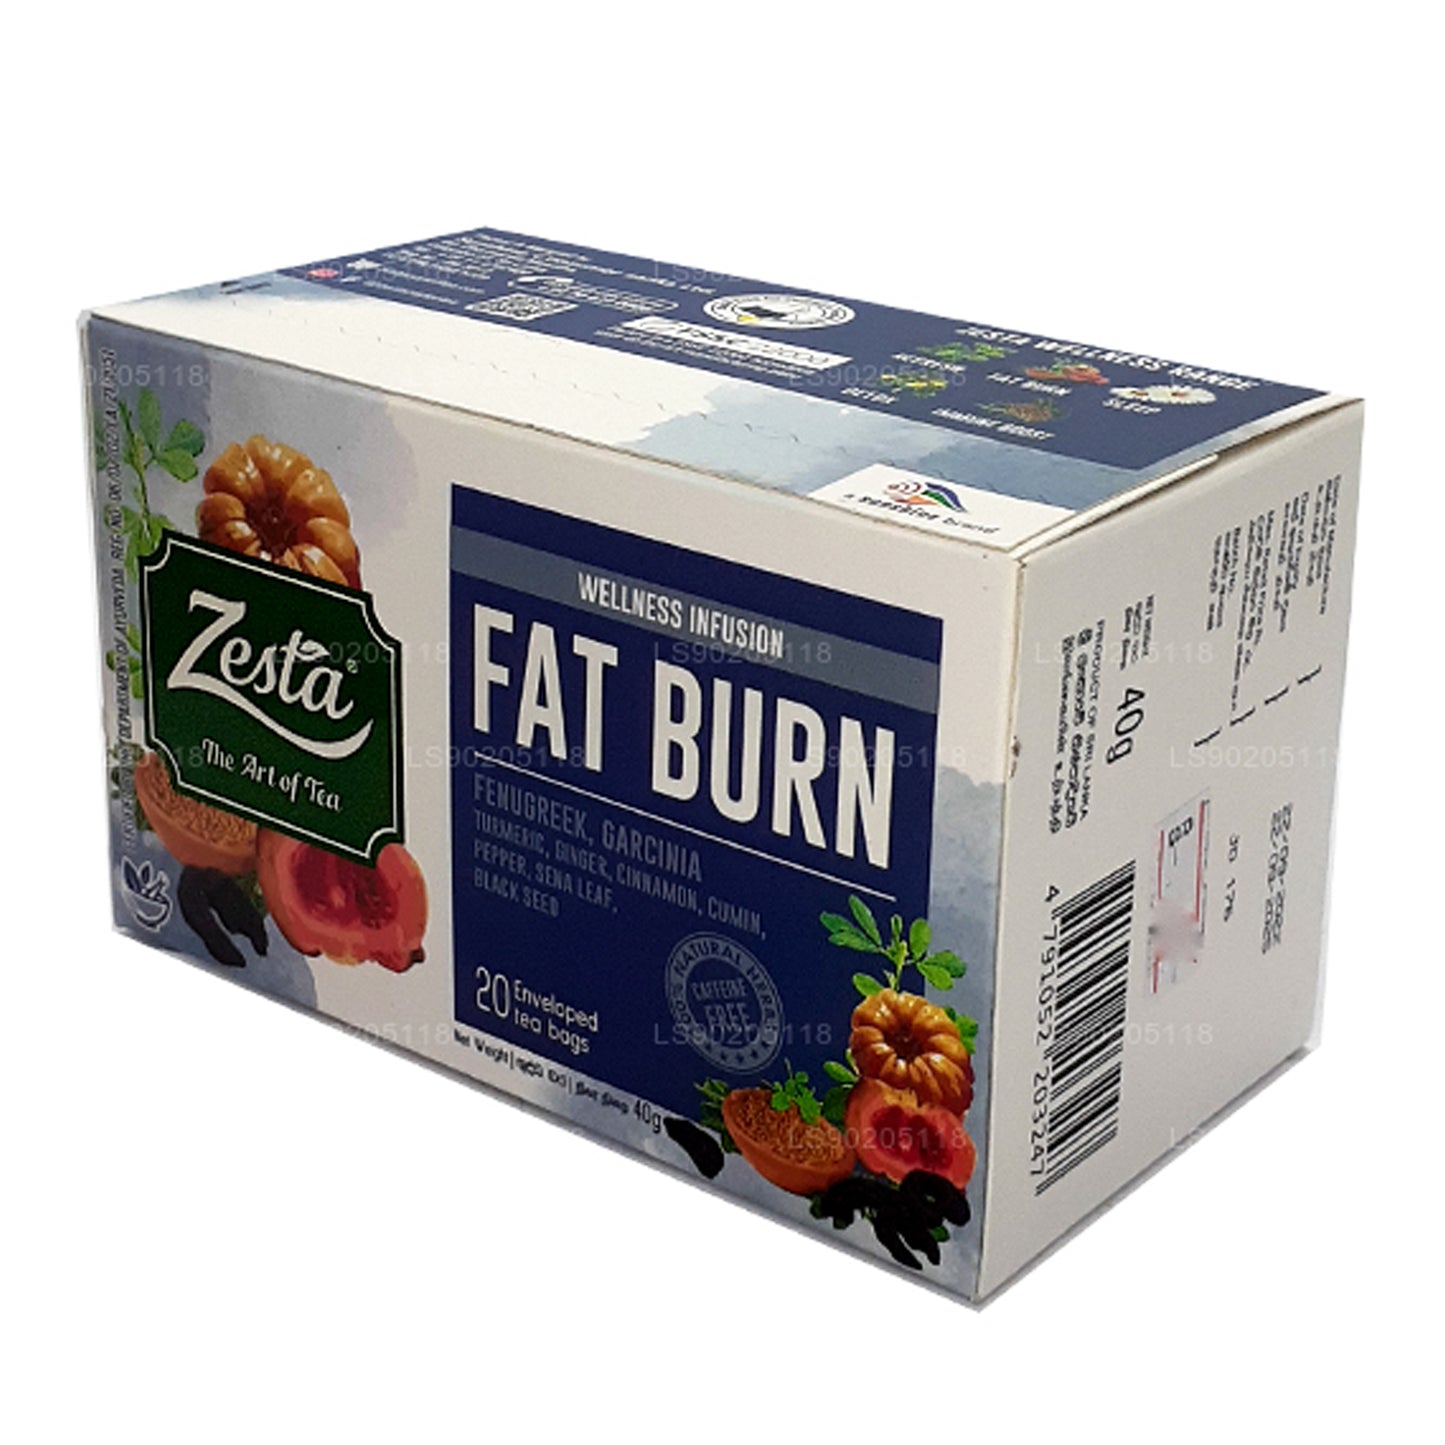 Zesta Fat Burn (40g) 20 茶包